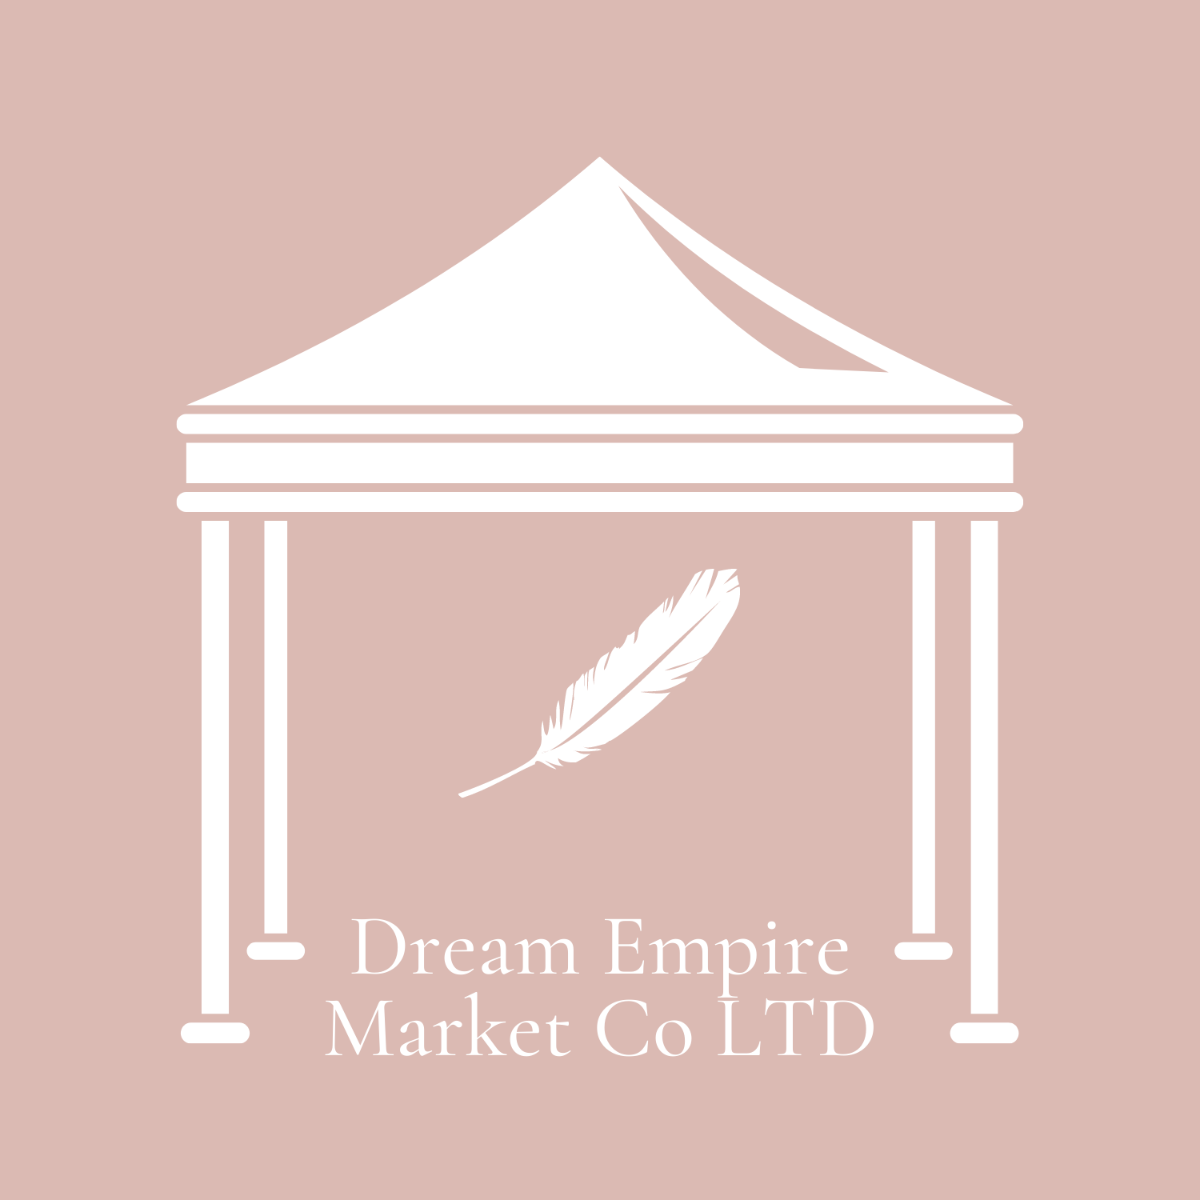 Dream Empire Market Co LTD-Image-1